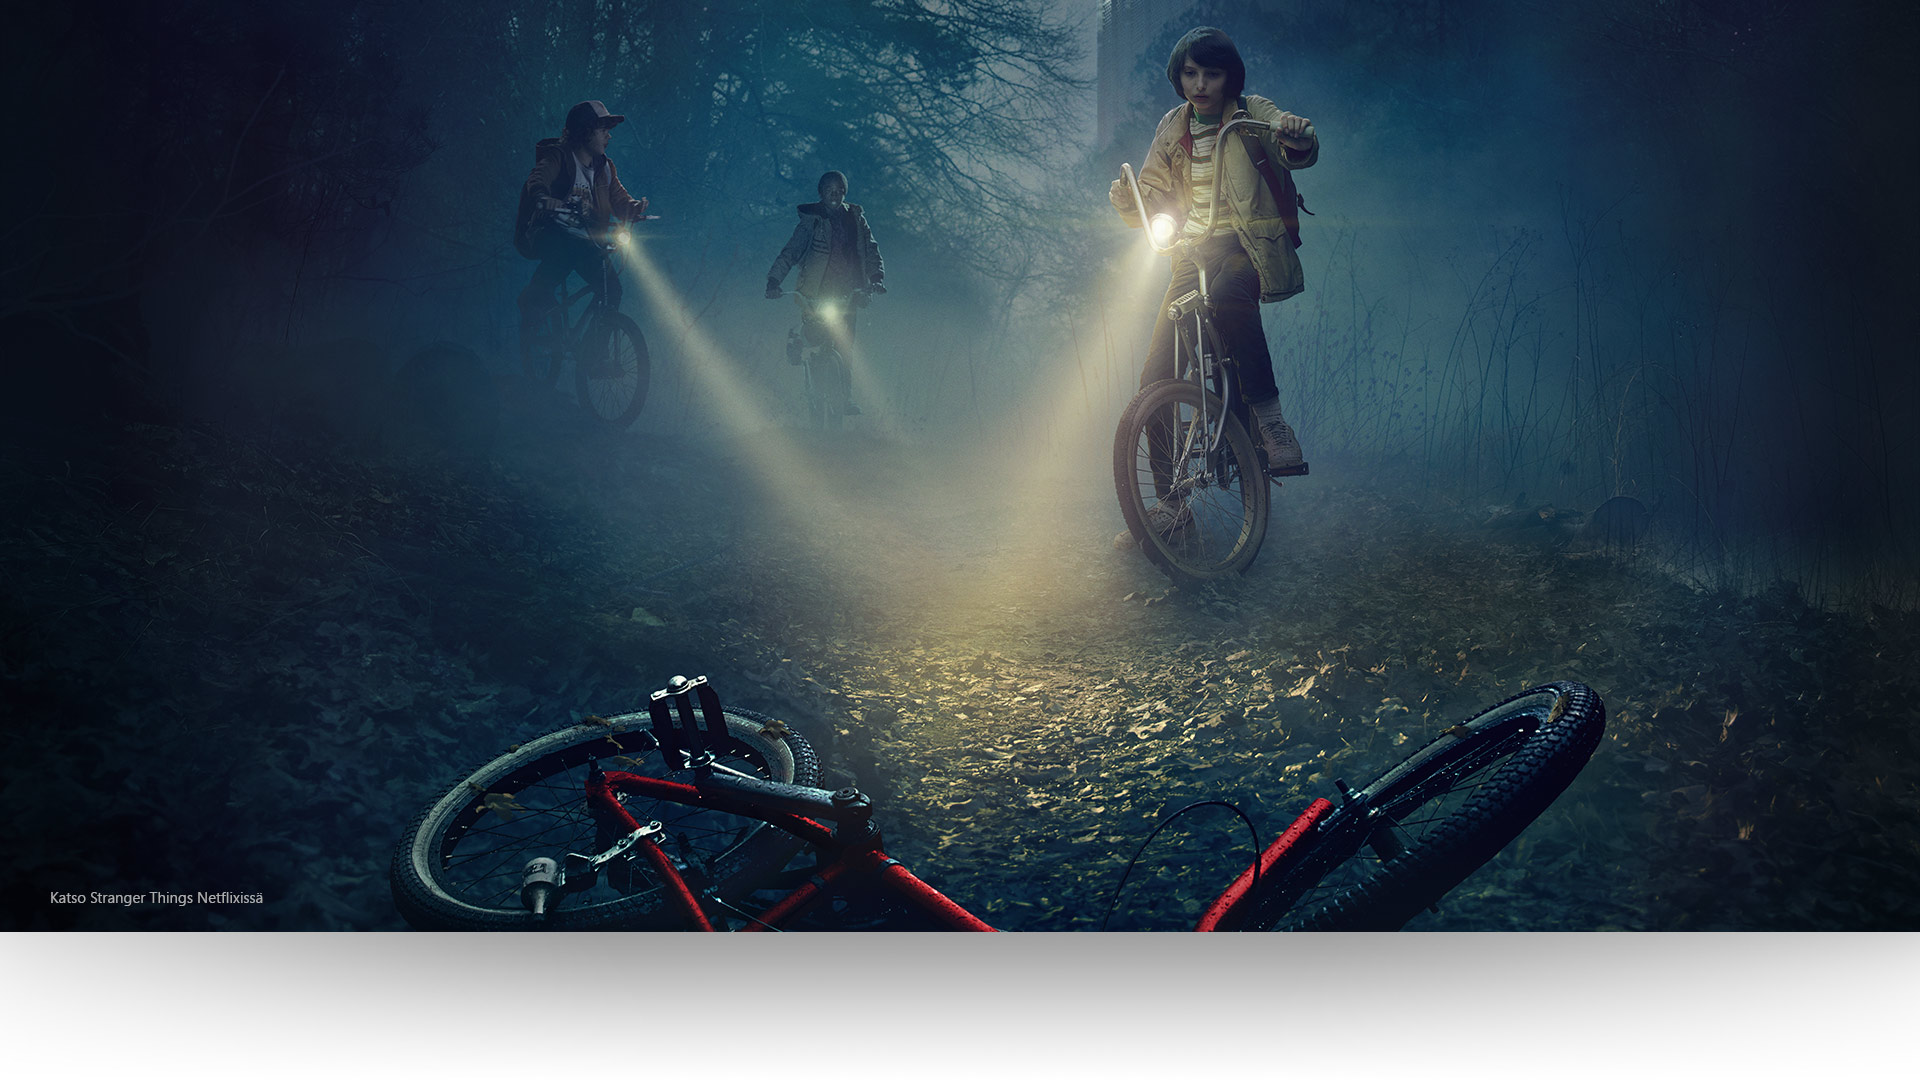 Stranger Things – Dustin, Lucas ja Mike valaisevat hylättyä polkupyörää synkällä metsäpolulla. Katso Stranger Things Netflixillä